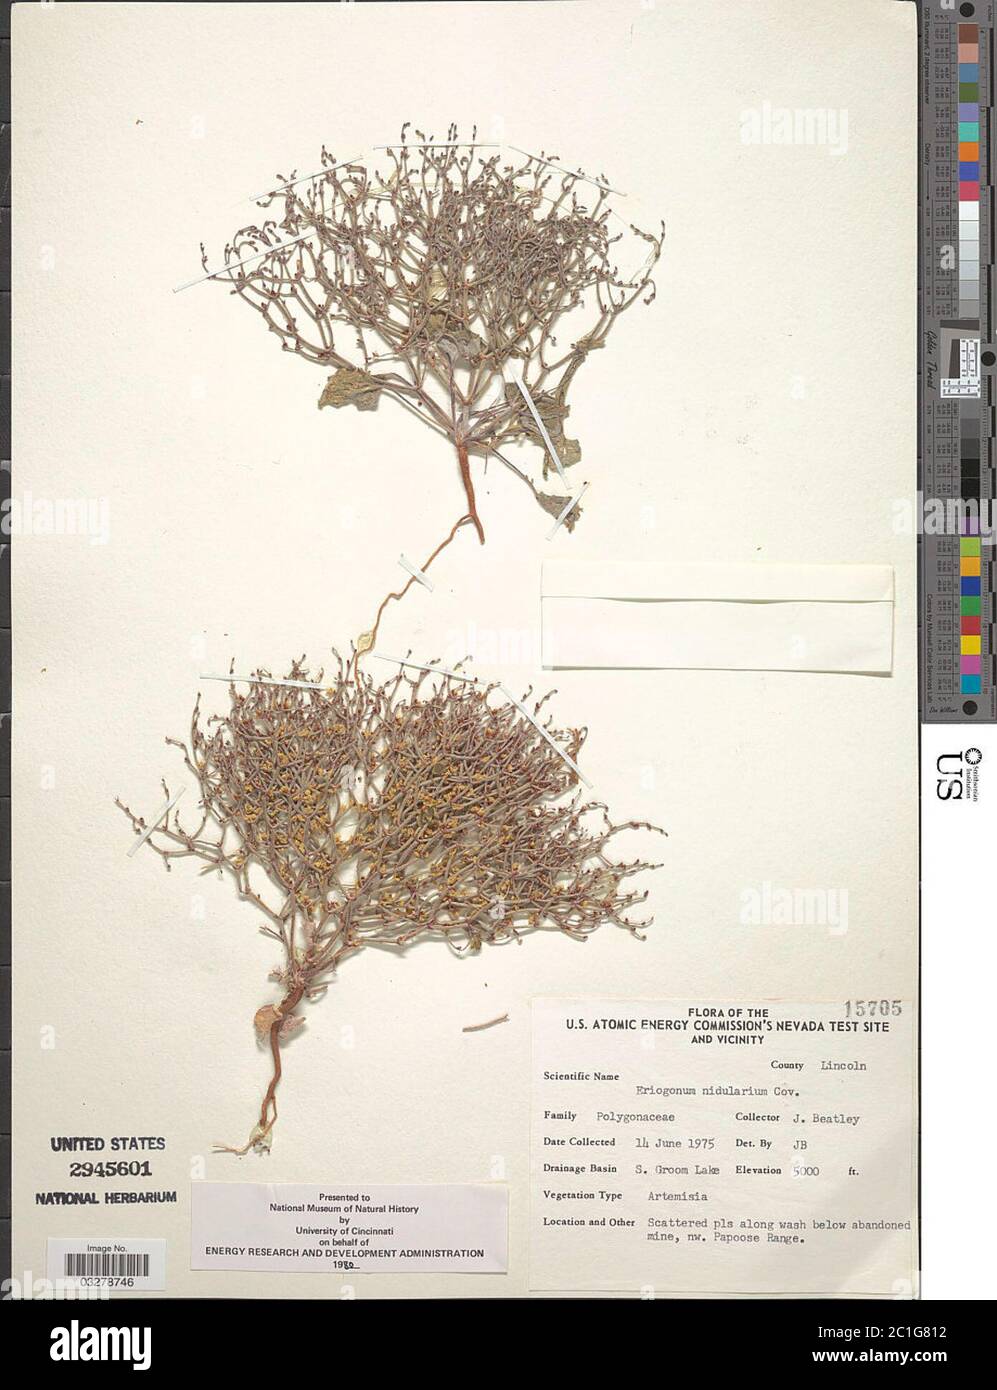 Eriogonum nidularium Coville Eriogonum nidularium Coville. Stock Photo